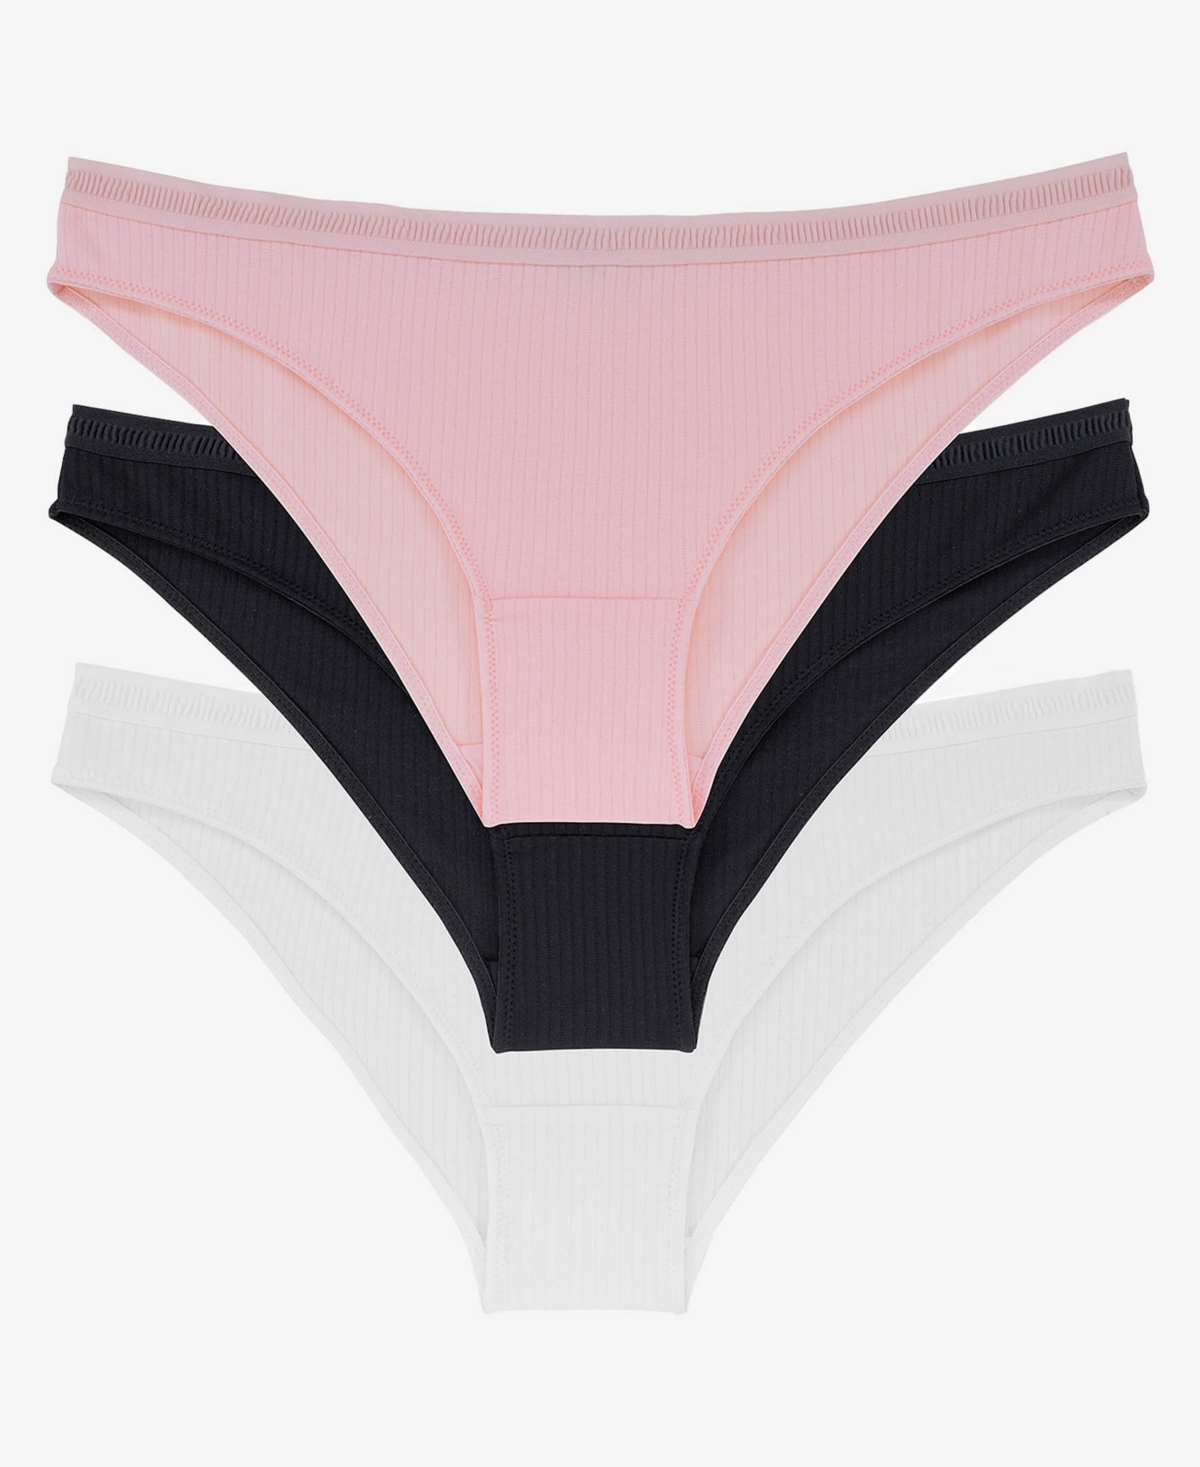 Women's Tiffany Bikini Panty Set, 3 Piece - Pink, Black, White